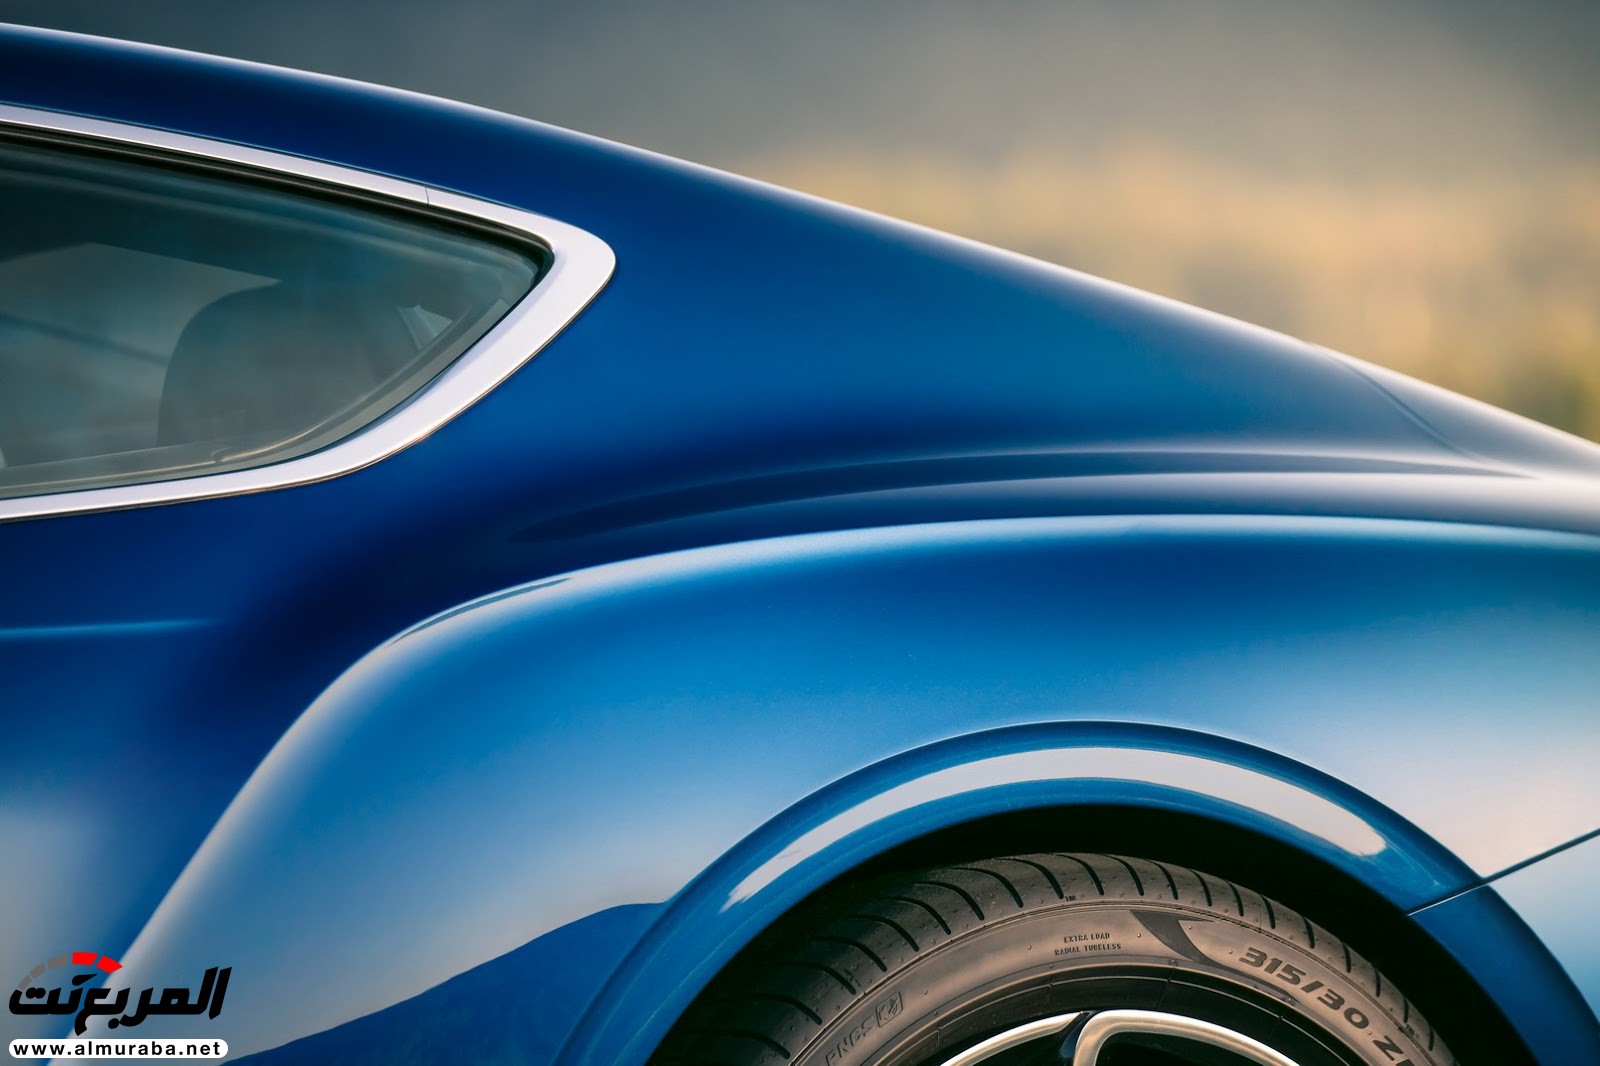 بنتلي كونتيننتال GT 2018 الجديدة كلياً "أفخم سيارة رياضية" تكشف نفسها رسمياً + صور ومواصفات 81